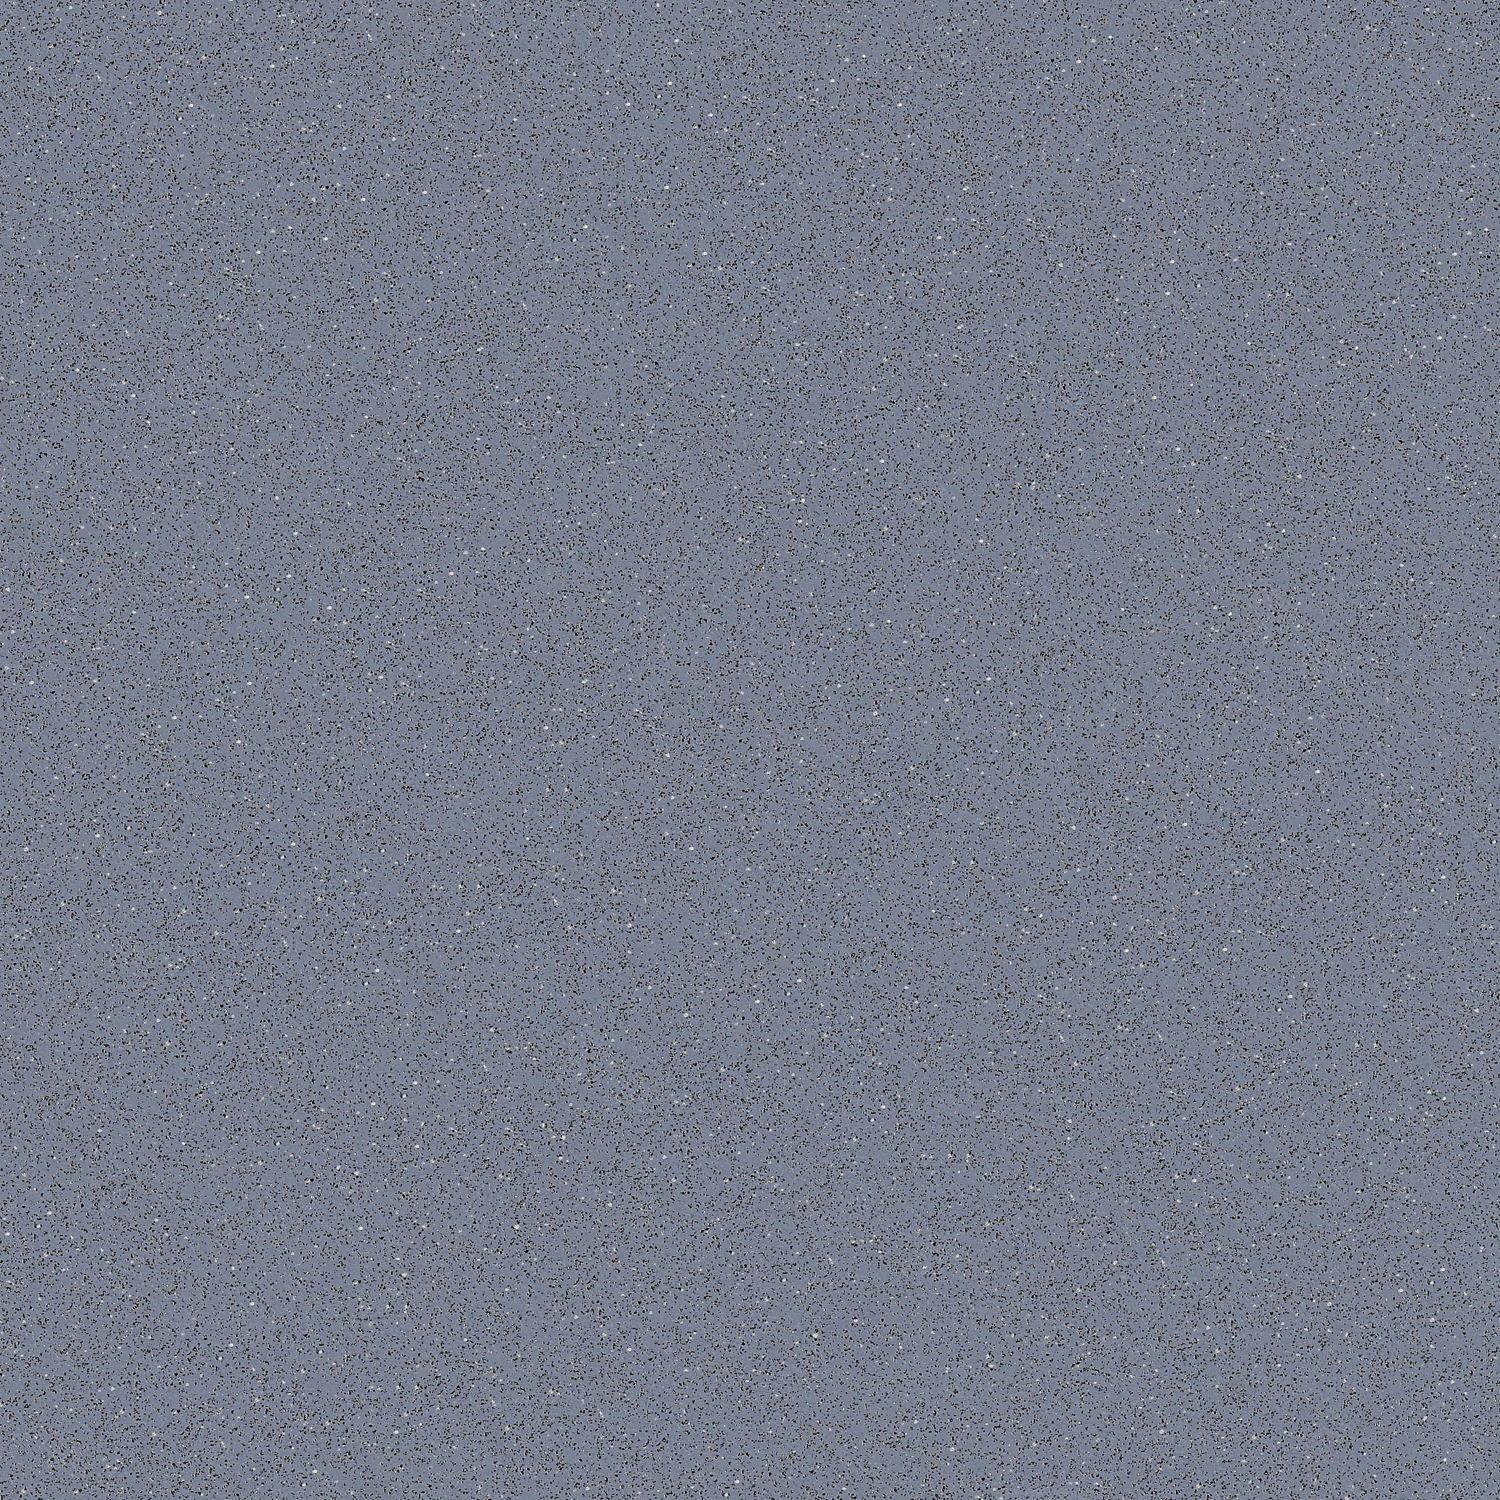 Storm Grey (R10, R11, R12)